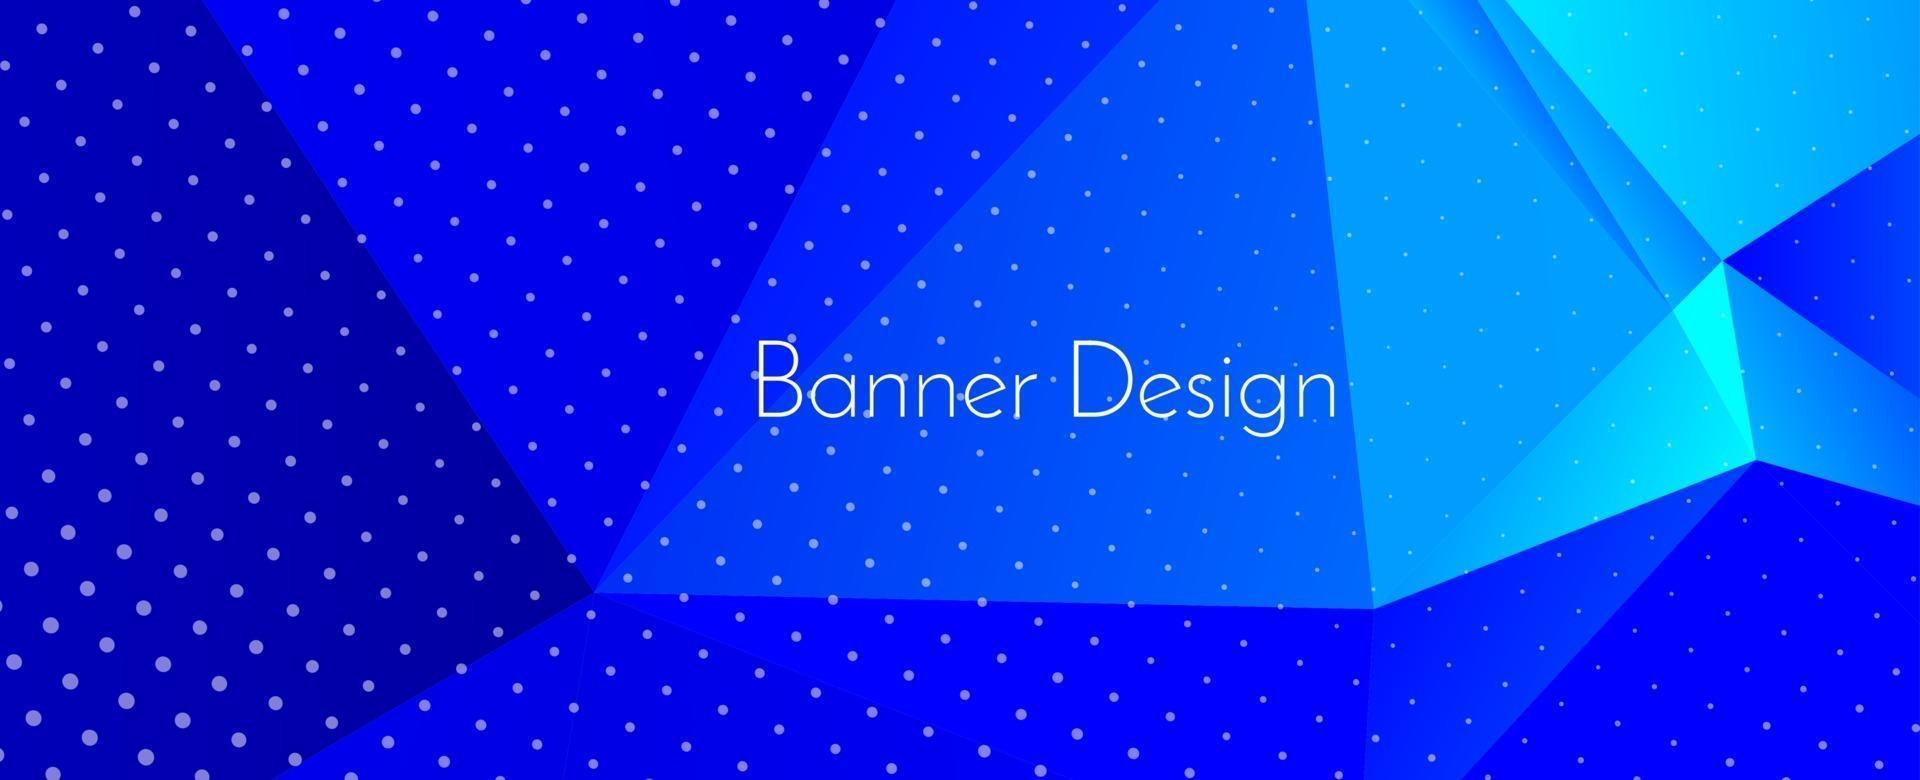 abstracte elegante geometrische decoratieve ontwerp banner achtergrond vector